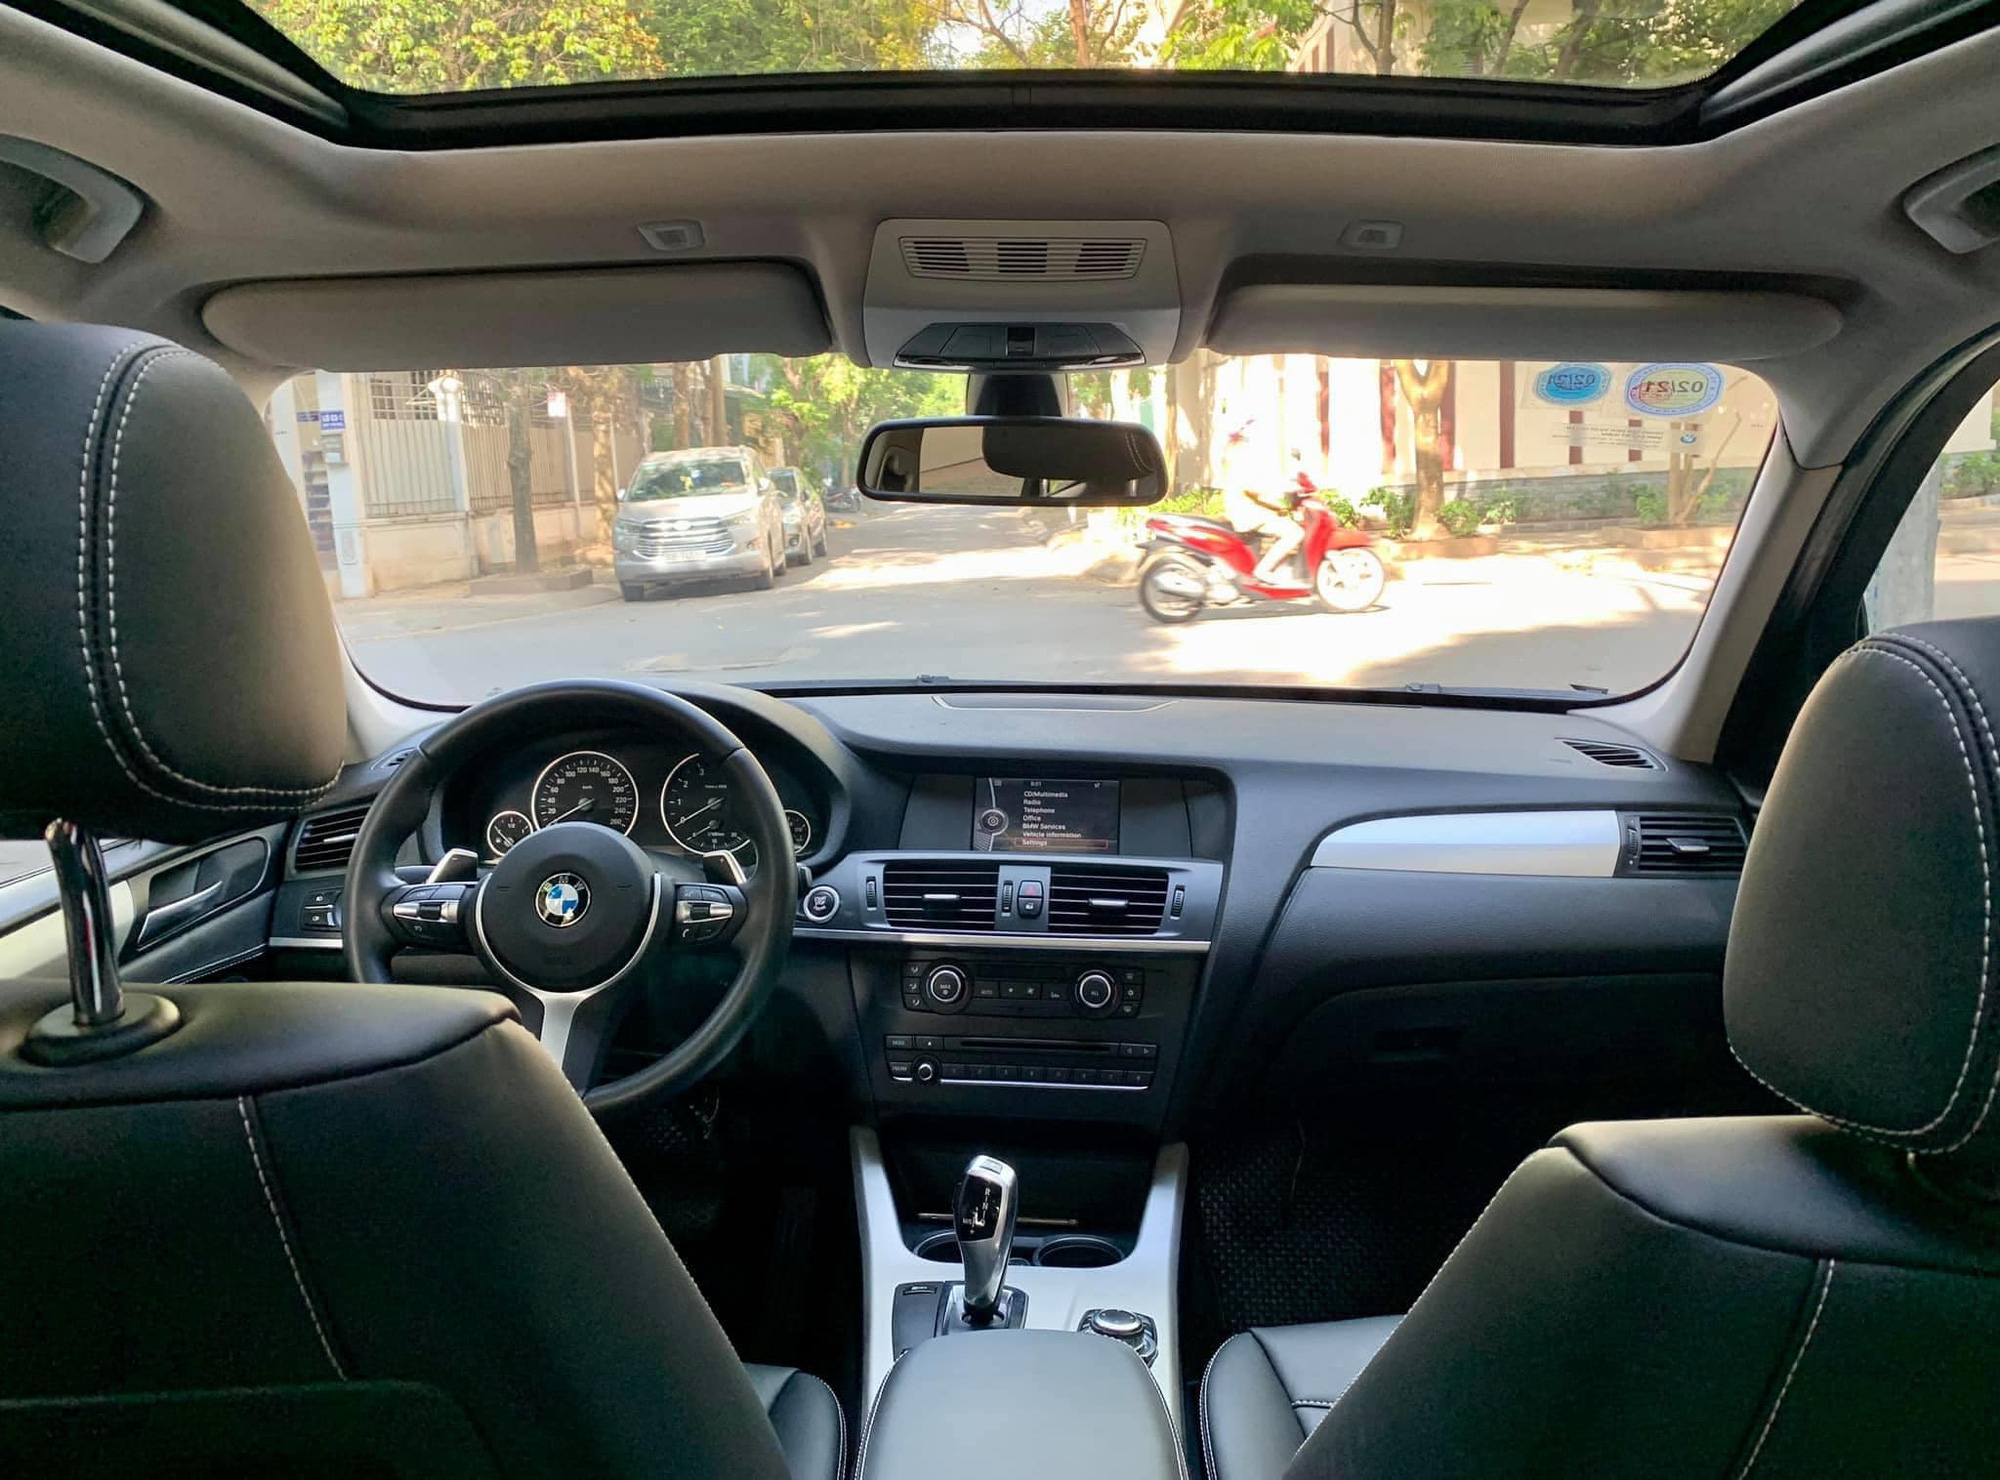 Kỳ công nâng cấp, chủ xe rao bán BMW X3 ngang giá Mazda CX-5 bản tiêu chuẩn - Ảnh 3.